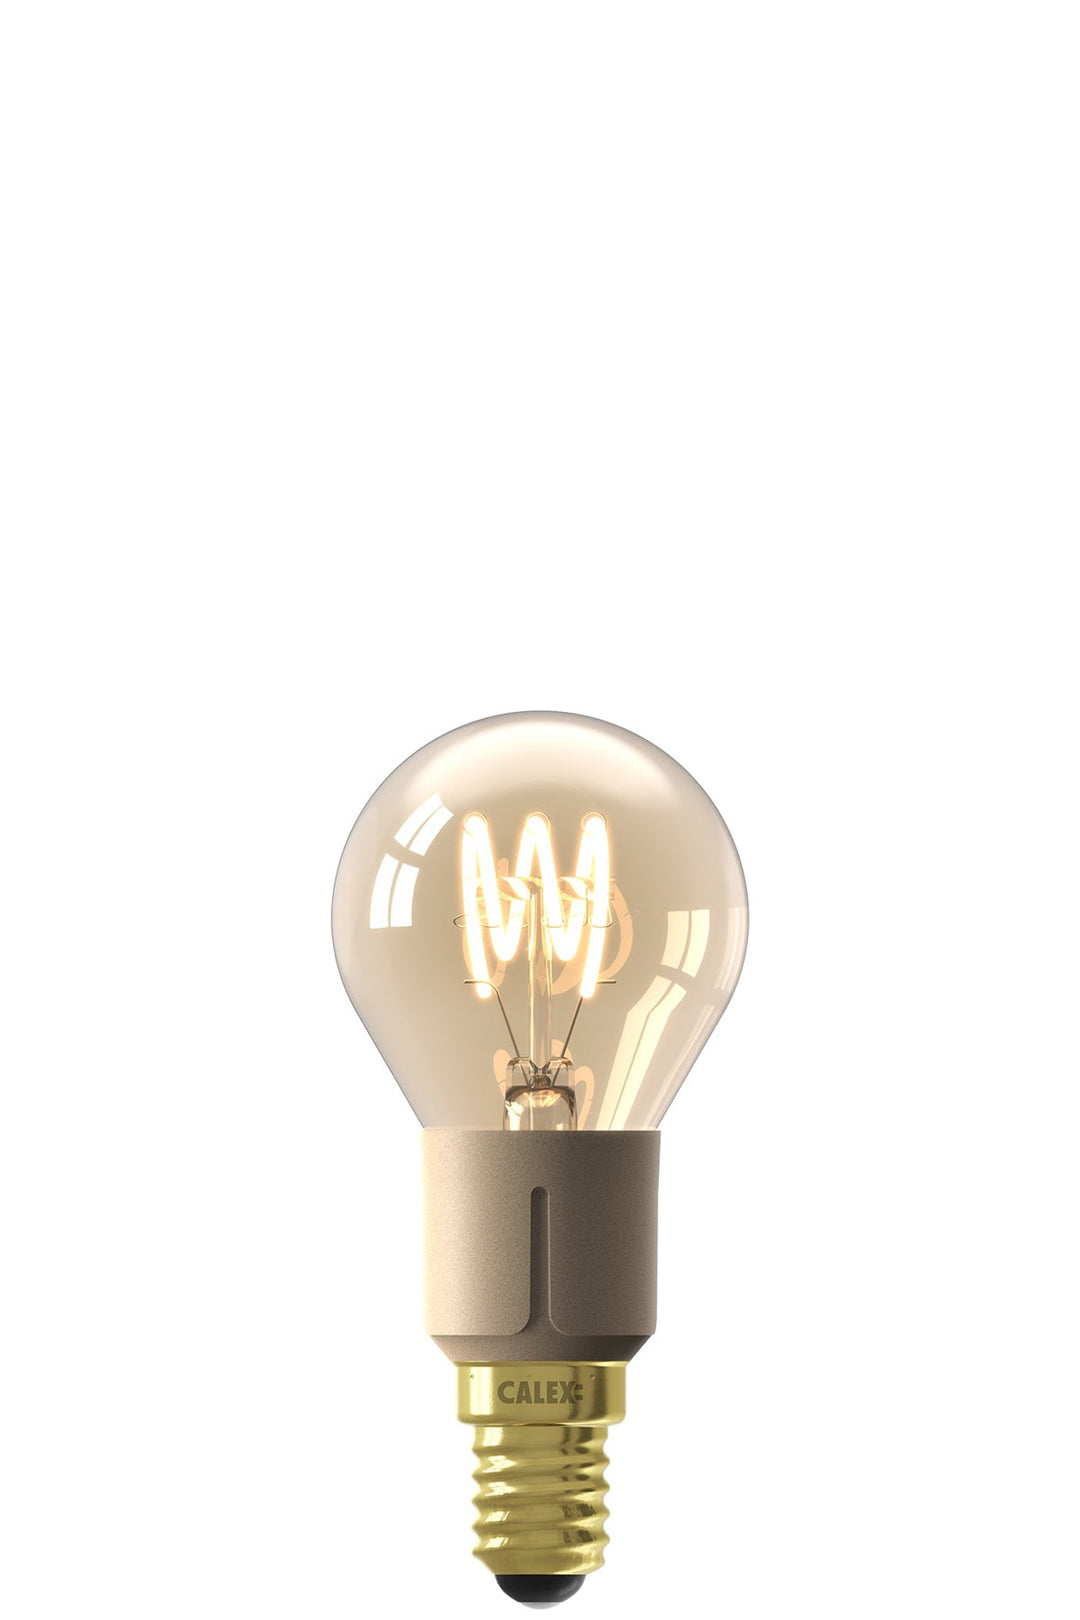 Calex Bulb P45 Gold Flex Filament, E14, 3-Step Dimming 1001003100